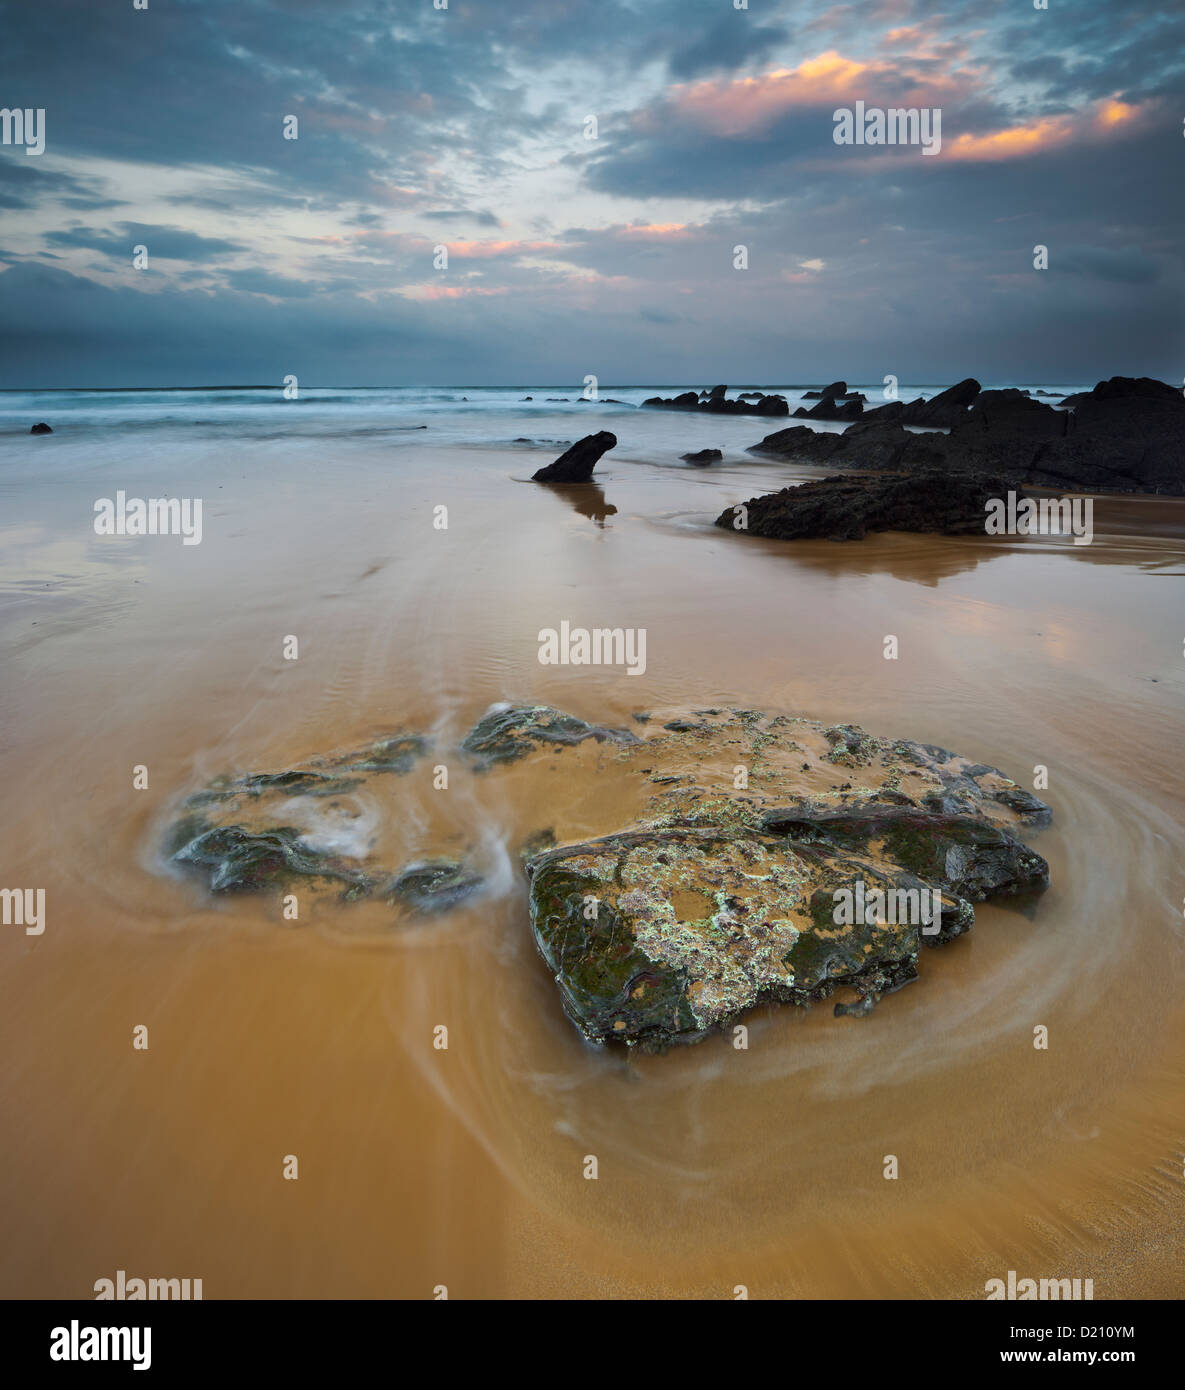 Roches sur plage, Barrika, Golfe de Gascogne, Asturias, Espagne Banque D'Images